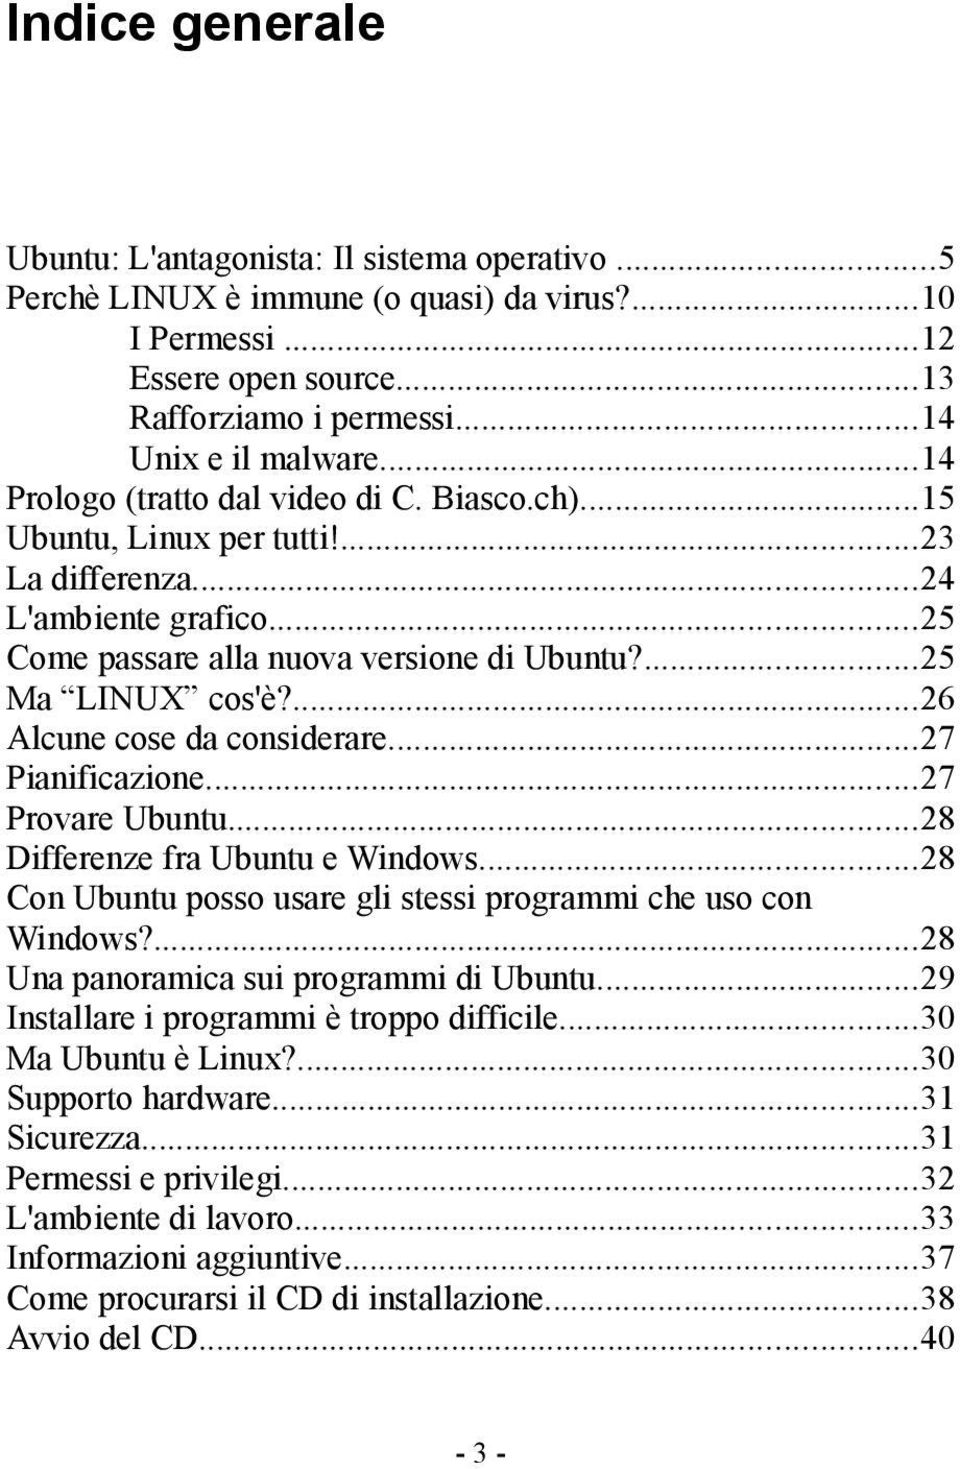 ...26 Alcune cose da considerare...27 Pianificazione...27 Provare Ubuntu...28 Differenze fra Ubuntu e Windows...28 Con Ubuntu posso usare gli stessi programmi che uso con Windows?